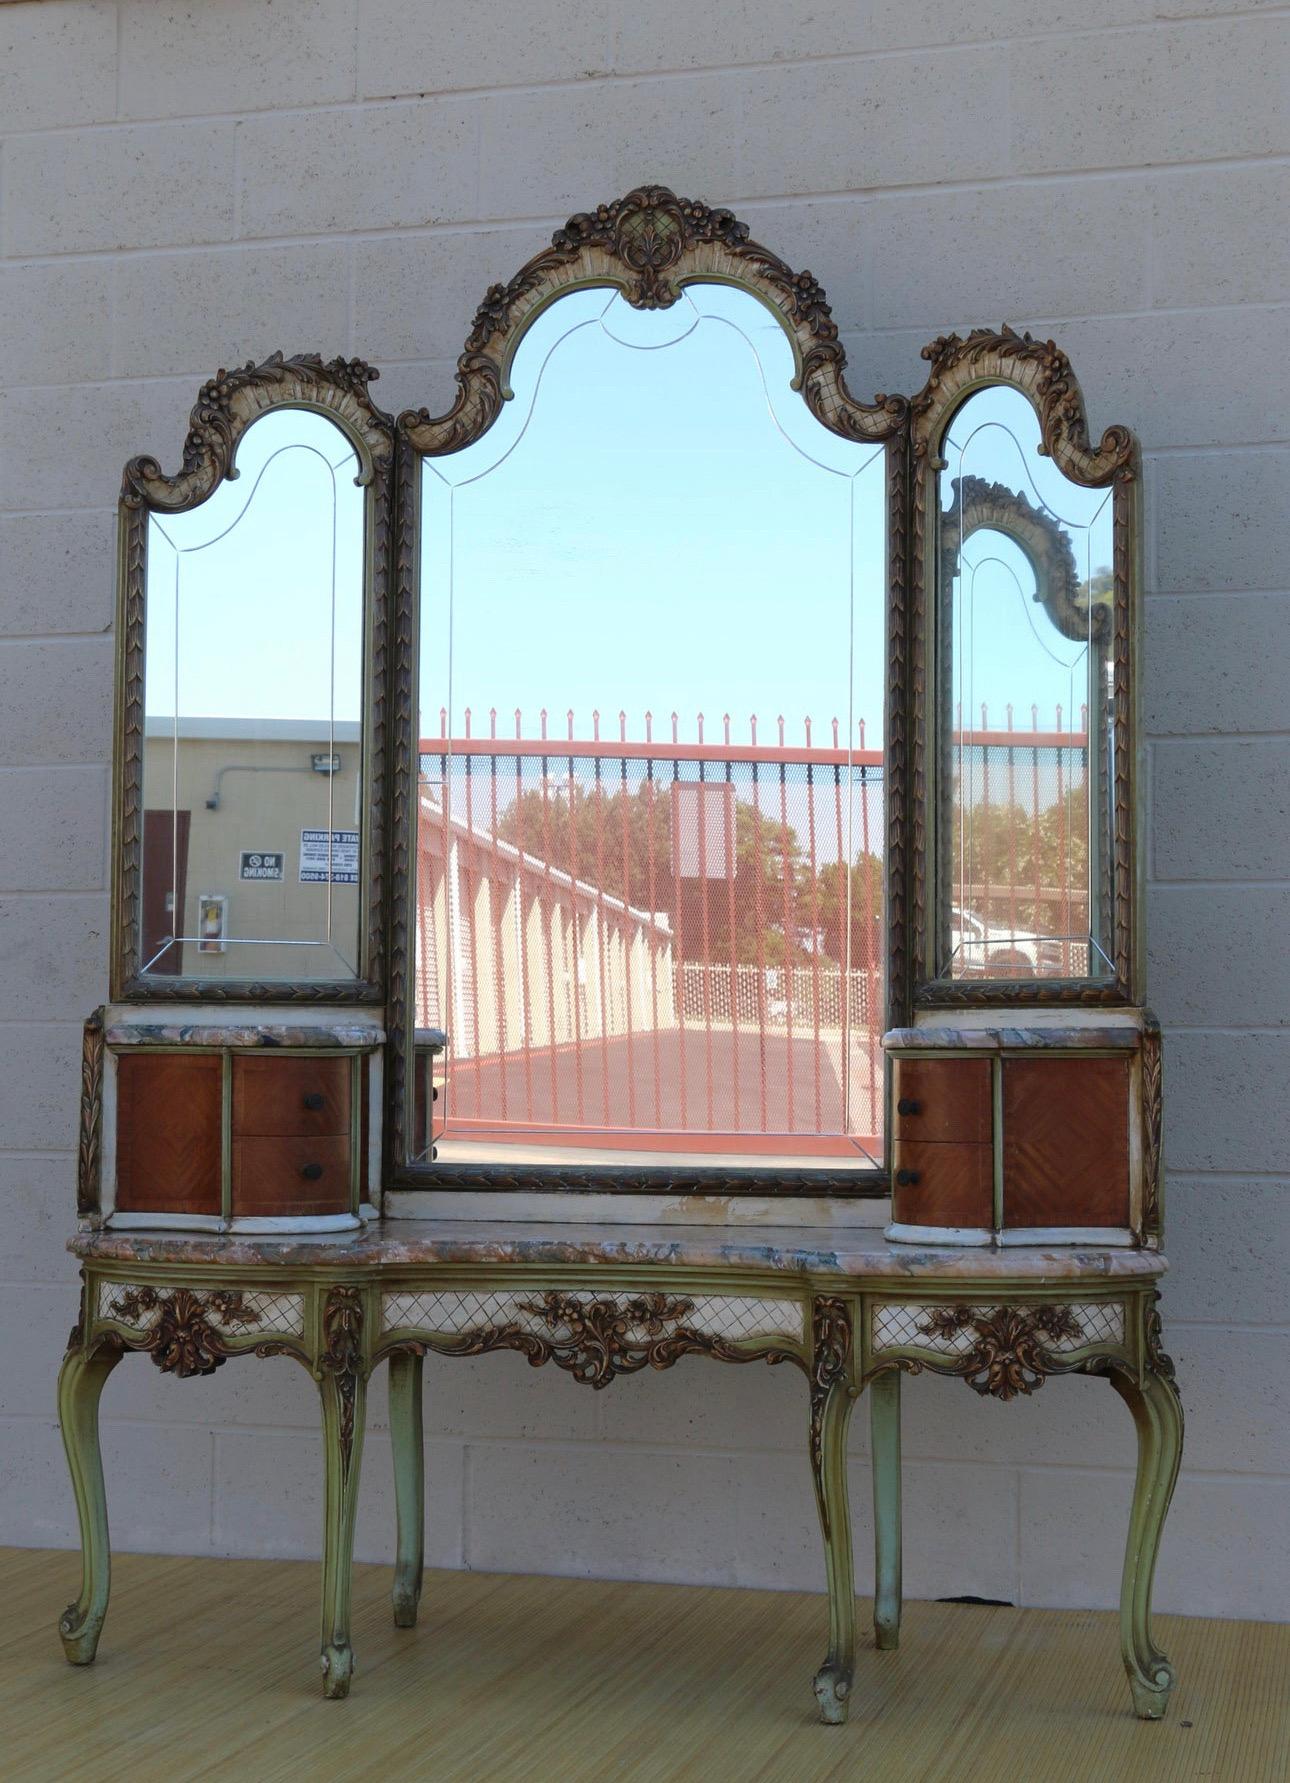 Spectaculaire meuble de toilette français ancien avec miroir à trois panneaux rabattables et deux armoires, deux tiroirs dans chacune d'elles. Il y a également trois plateaux en marbre qui se détachent. Cette coiffeuse date des années 1920.